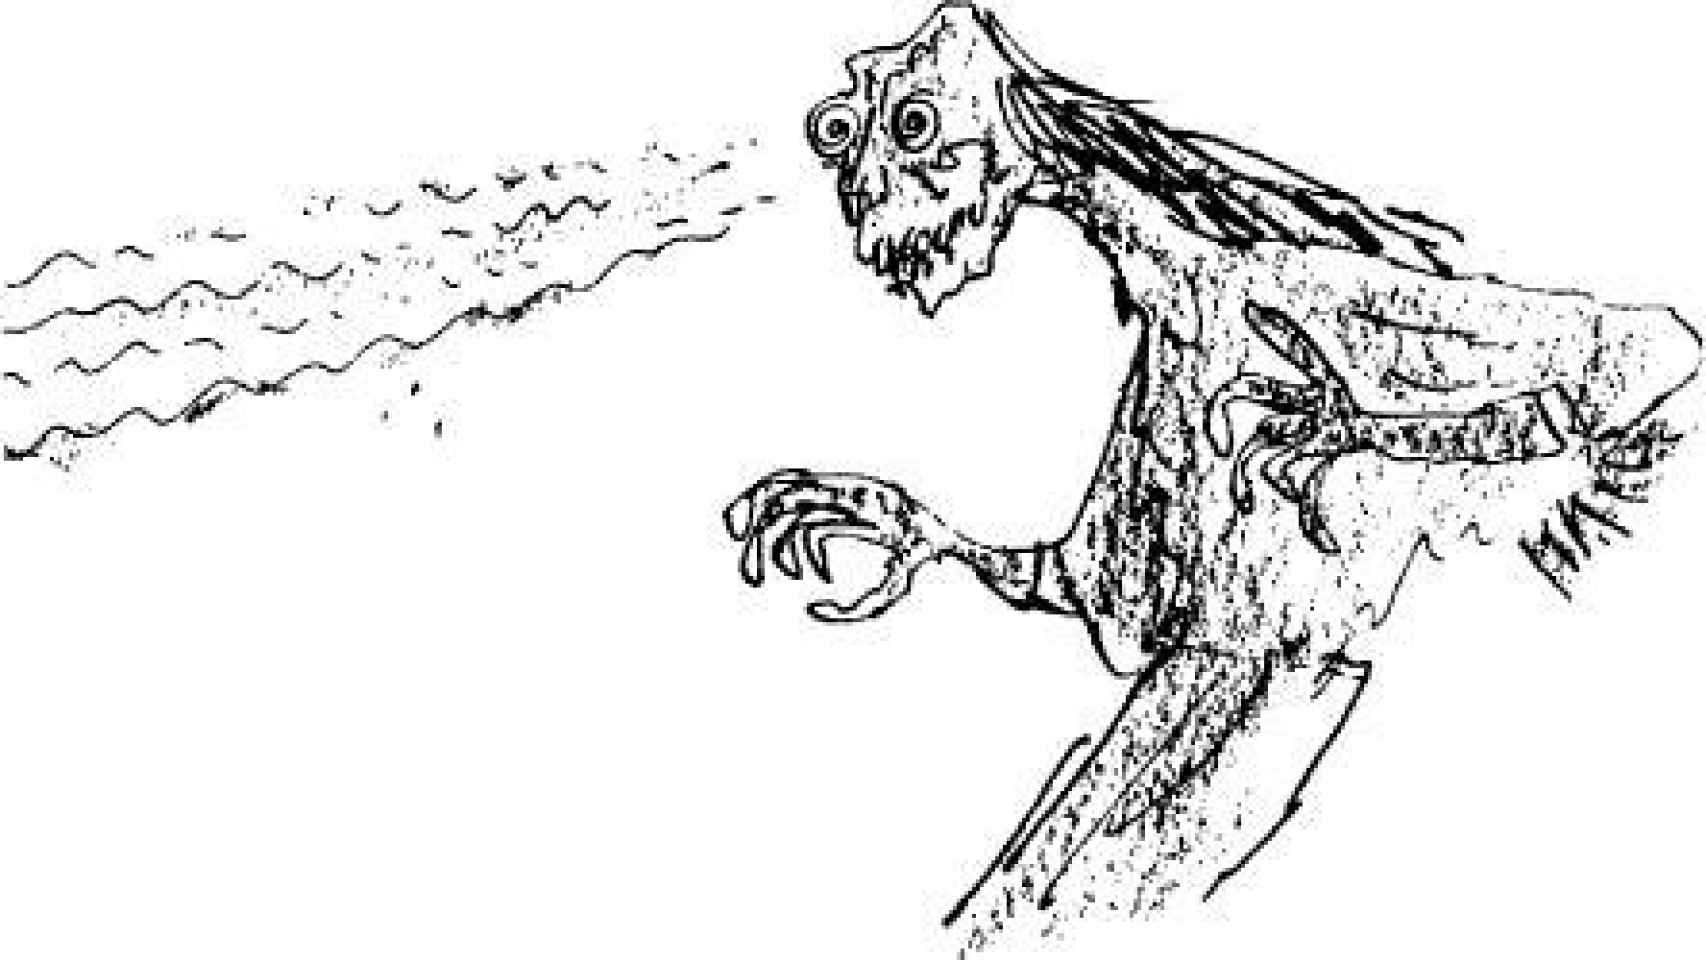 Ilustración de Las brujas, por Quentin Blake para Roald Dahl.